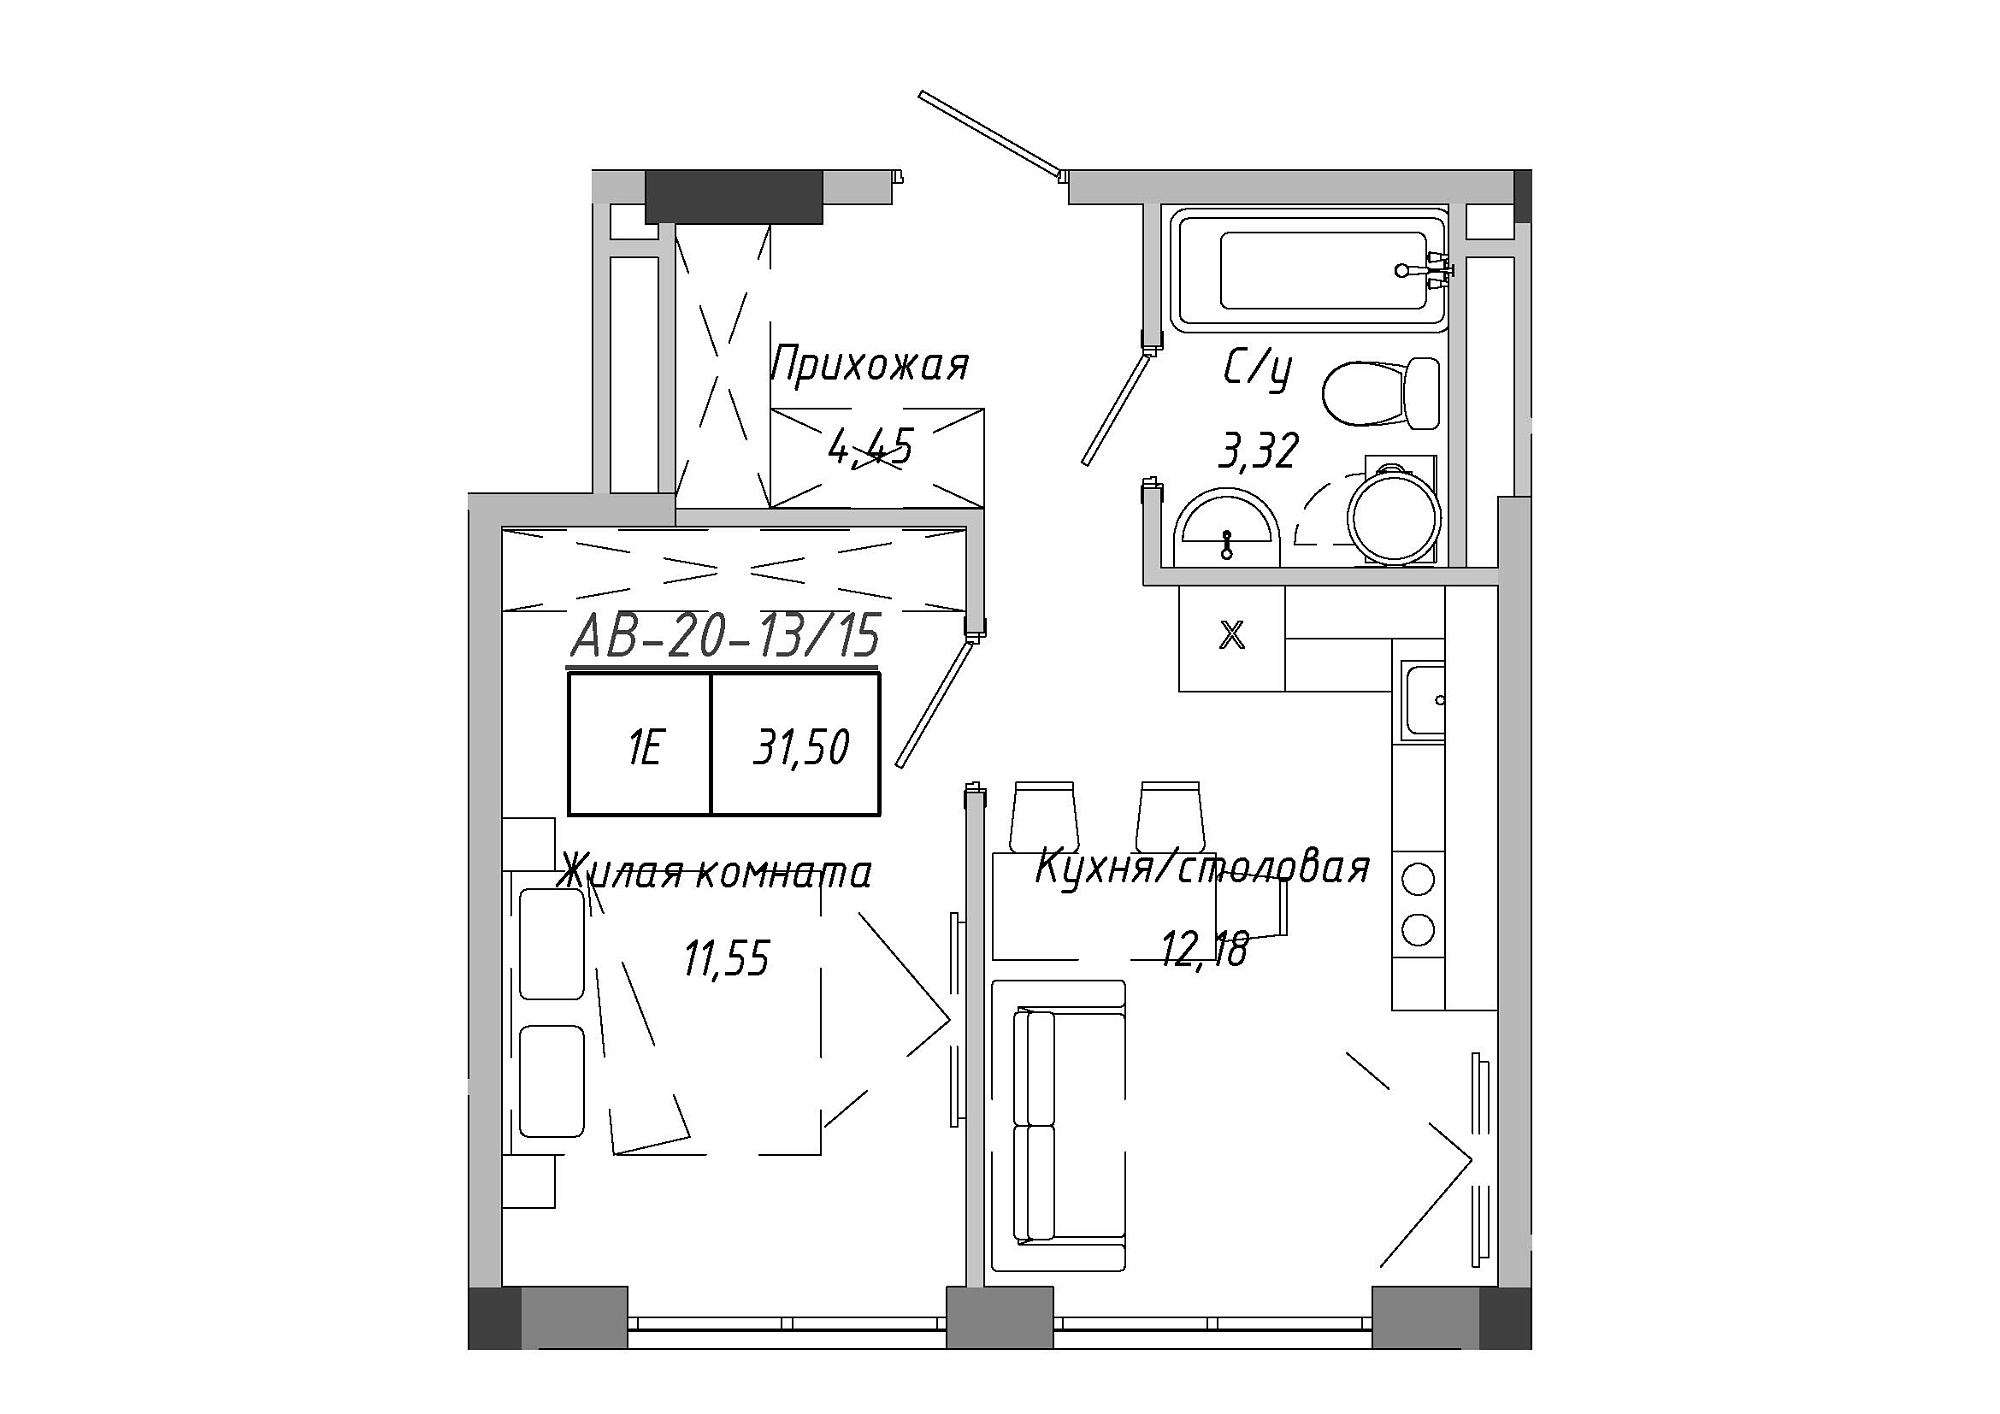 Планировка 1-к квартира площей 31.5м2, AB-20-13/00115.